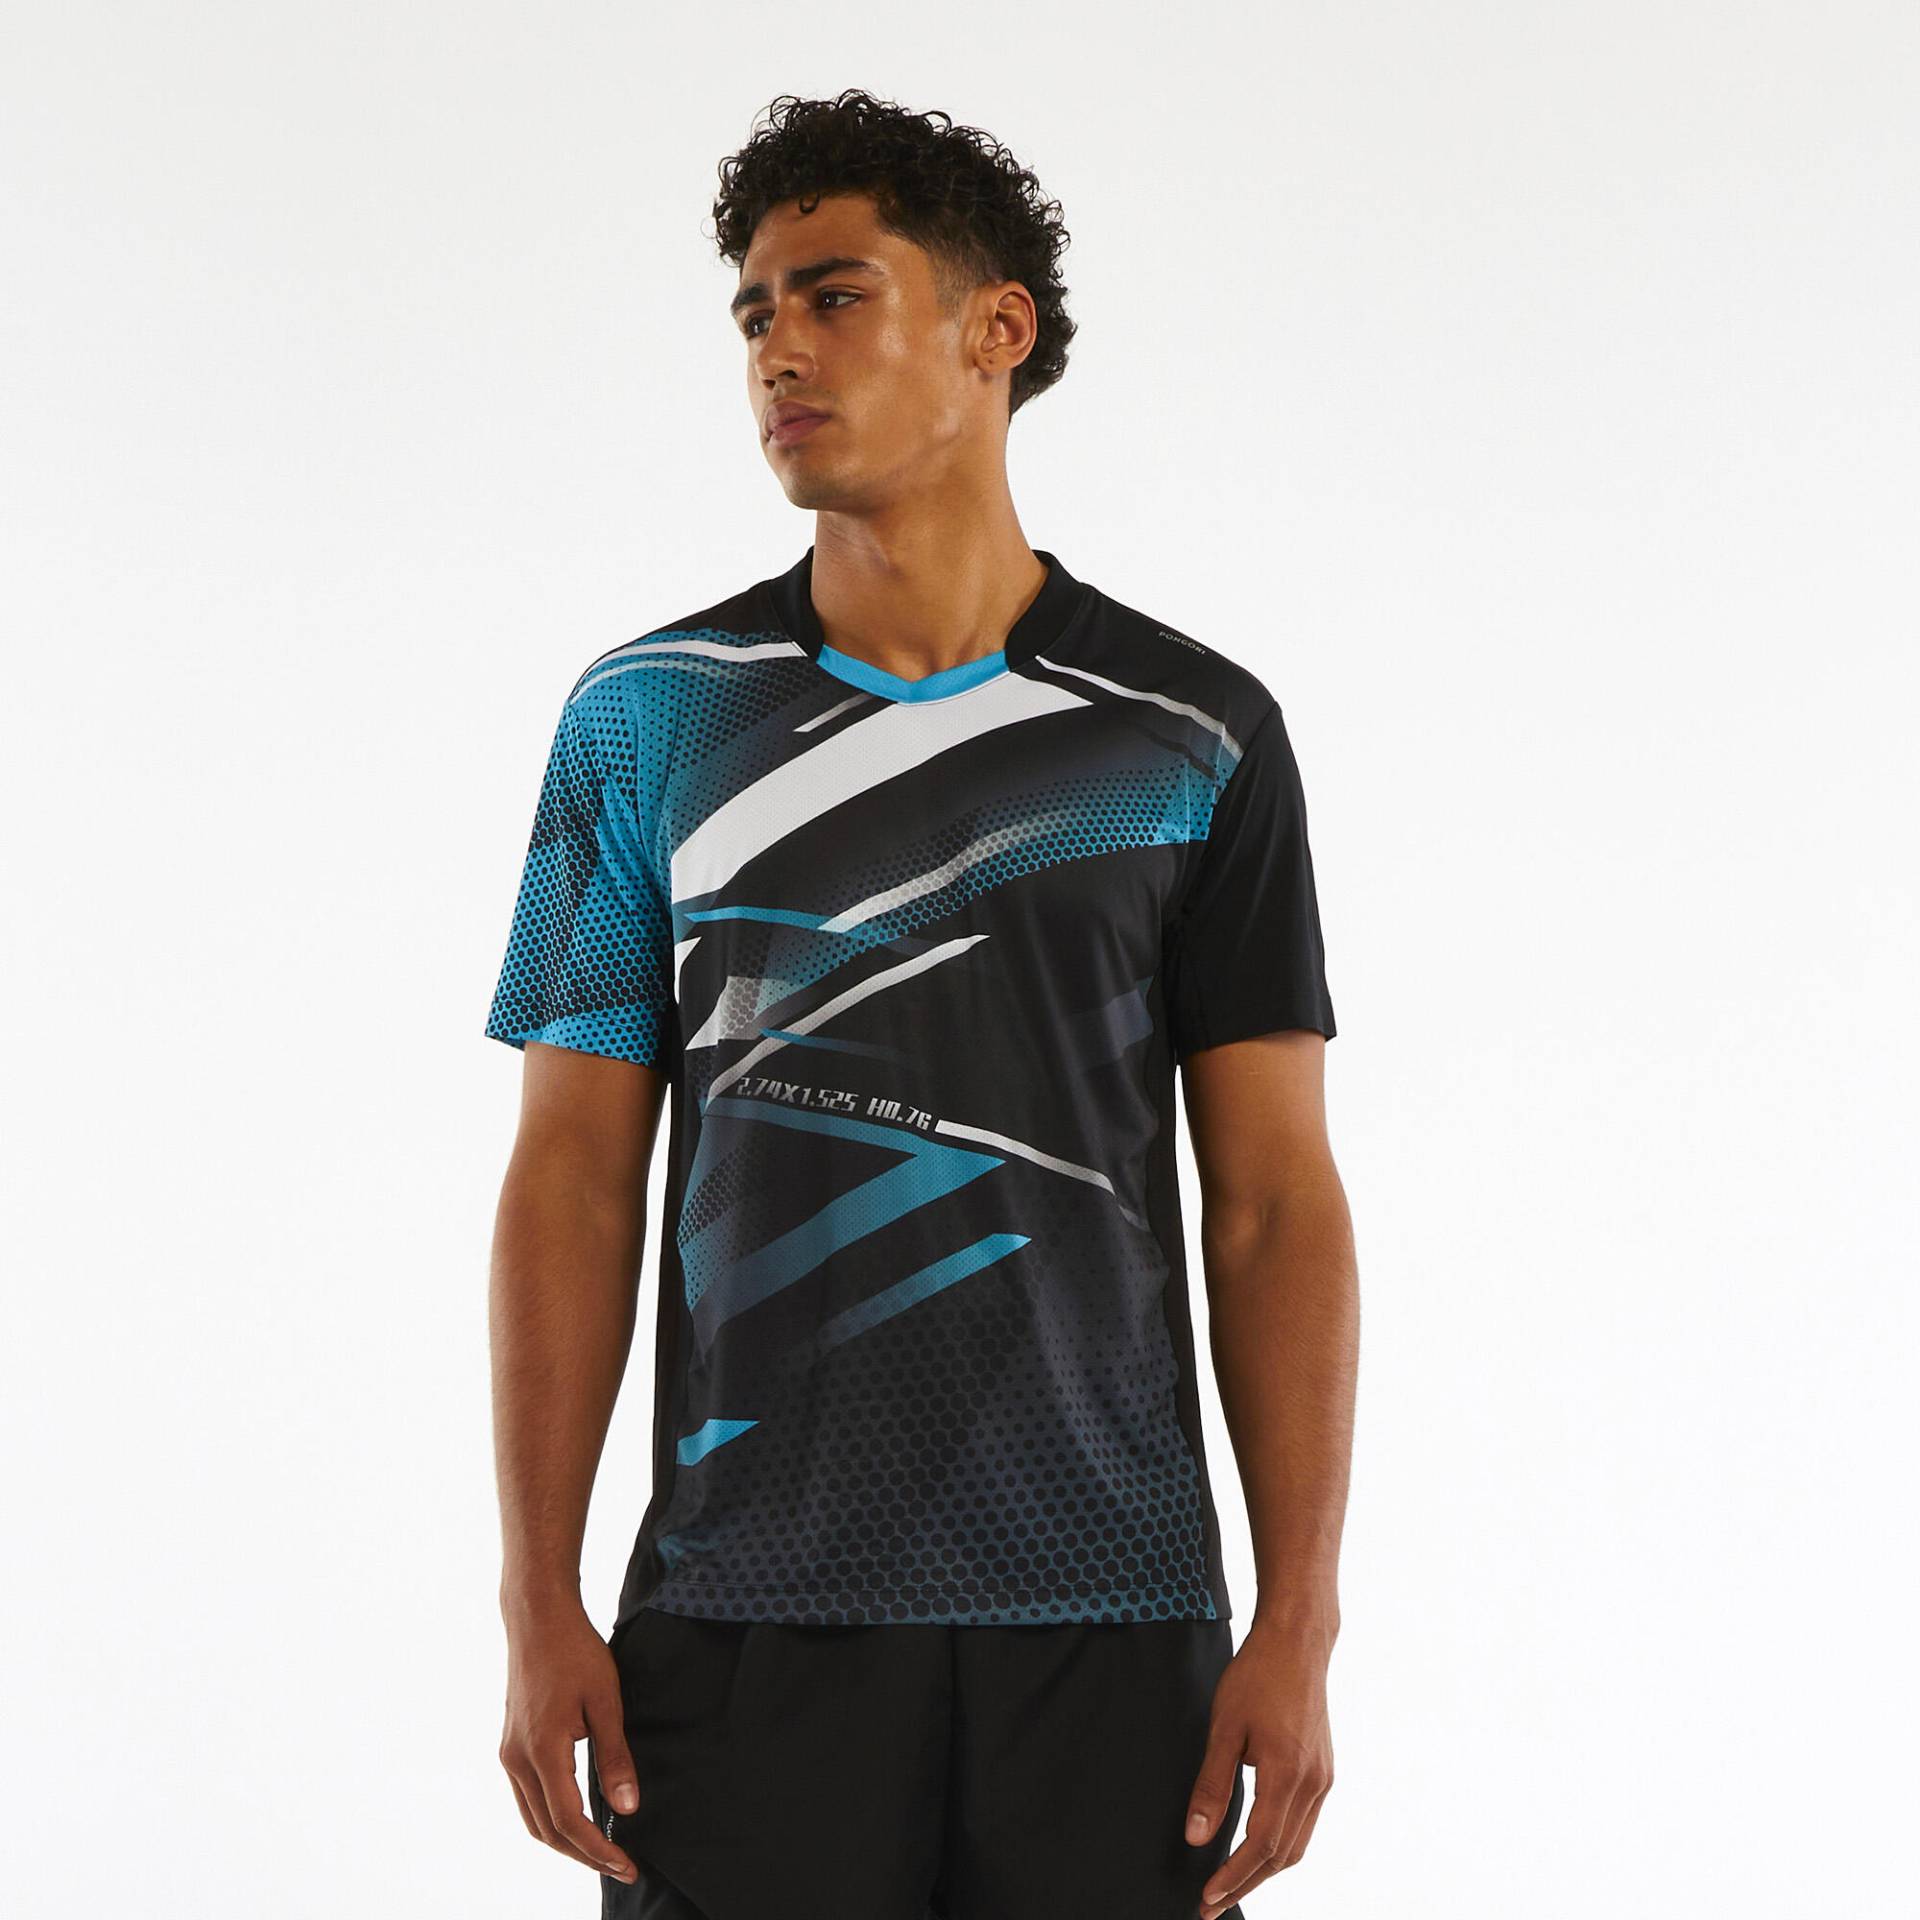 Herren Tischtennis T-Shirt TTP560 schwarz/blau von PONGORI